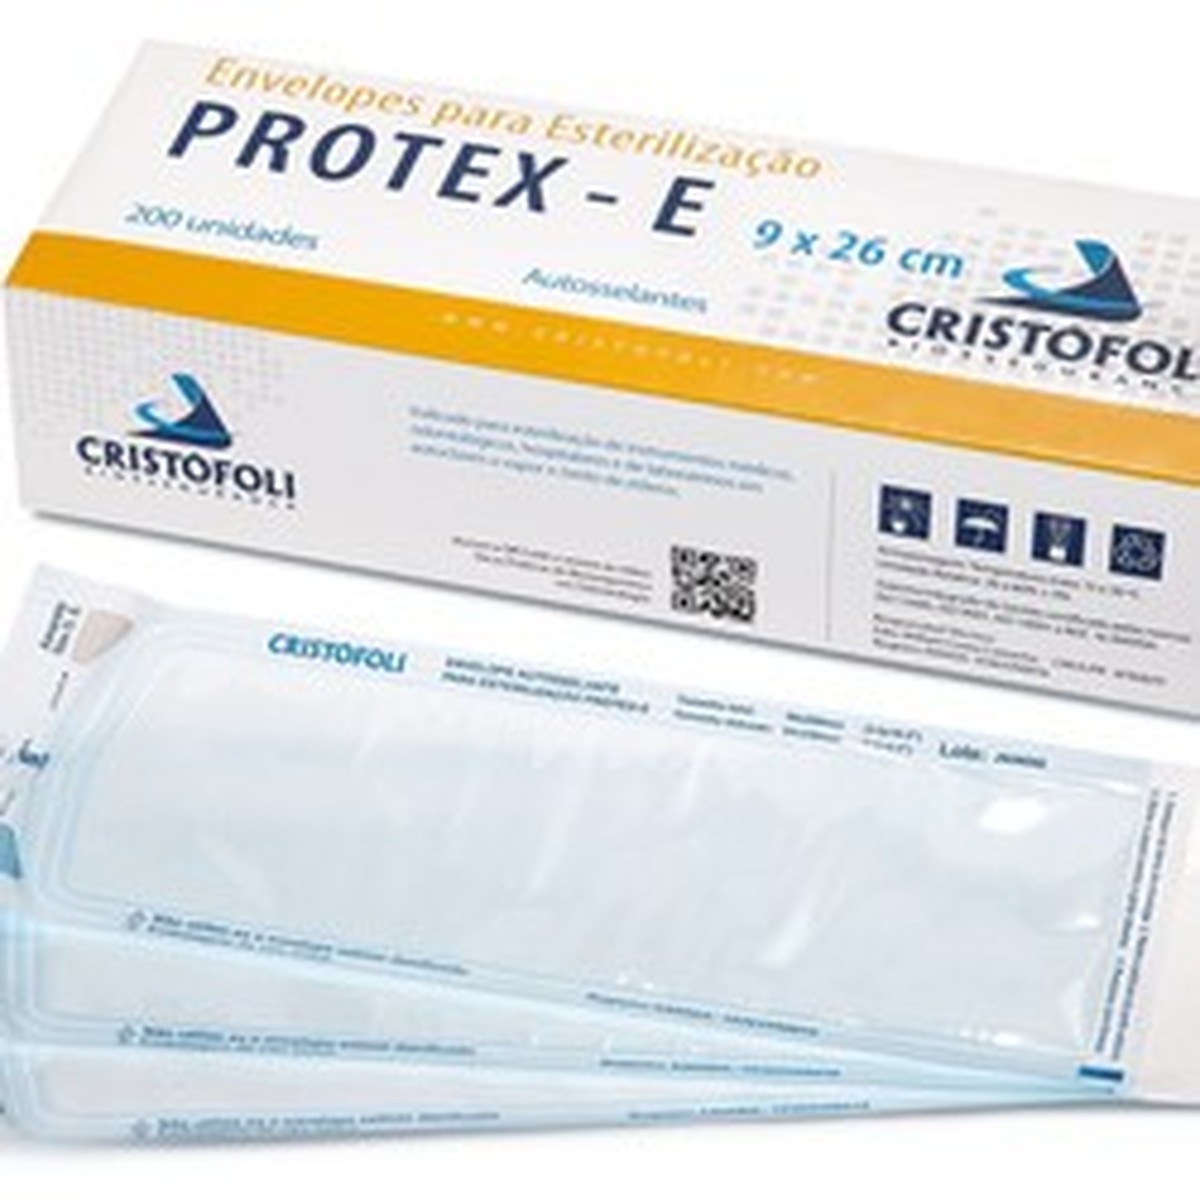 Foto do produto Envelopes para Esterilização Protex-E Cristofoli